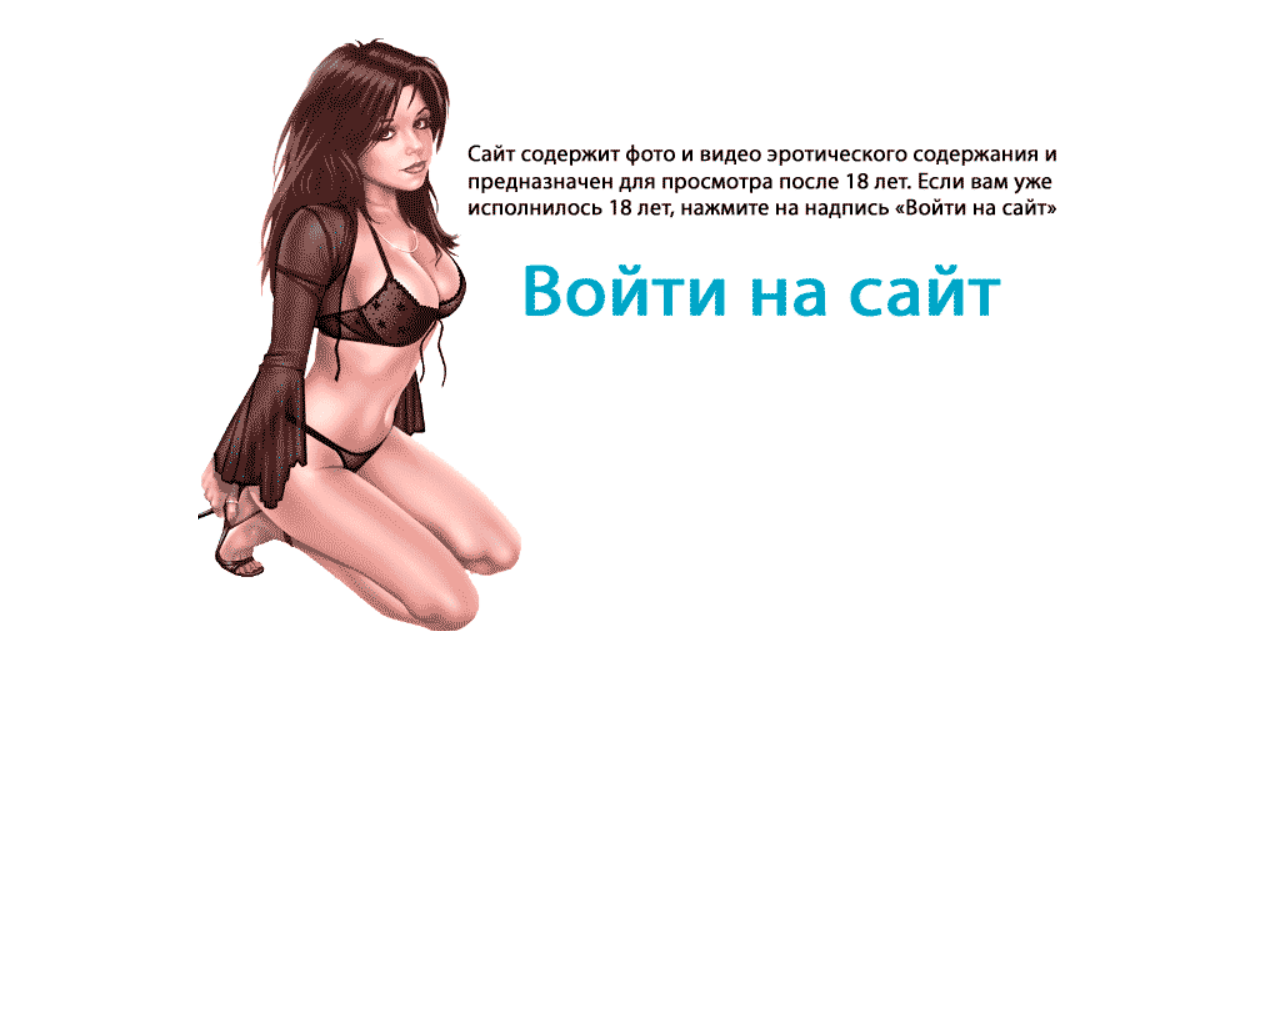 Изображение сайта vsem-jurnal.ru в разрешении 1280x1024